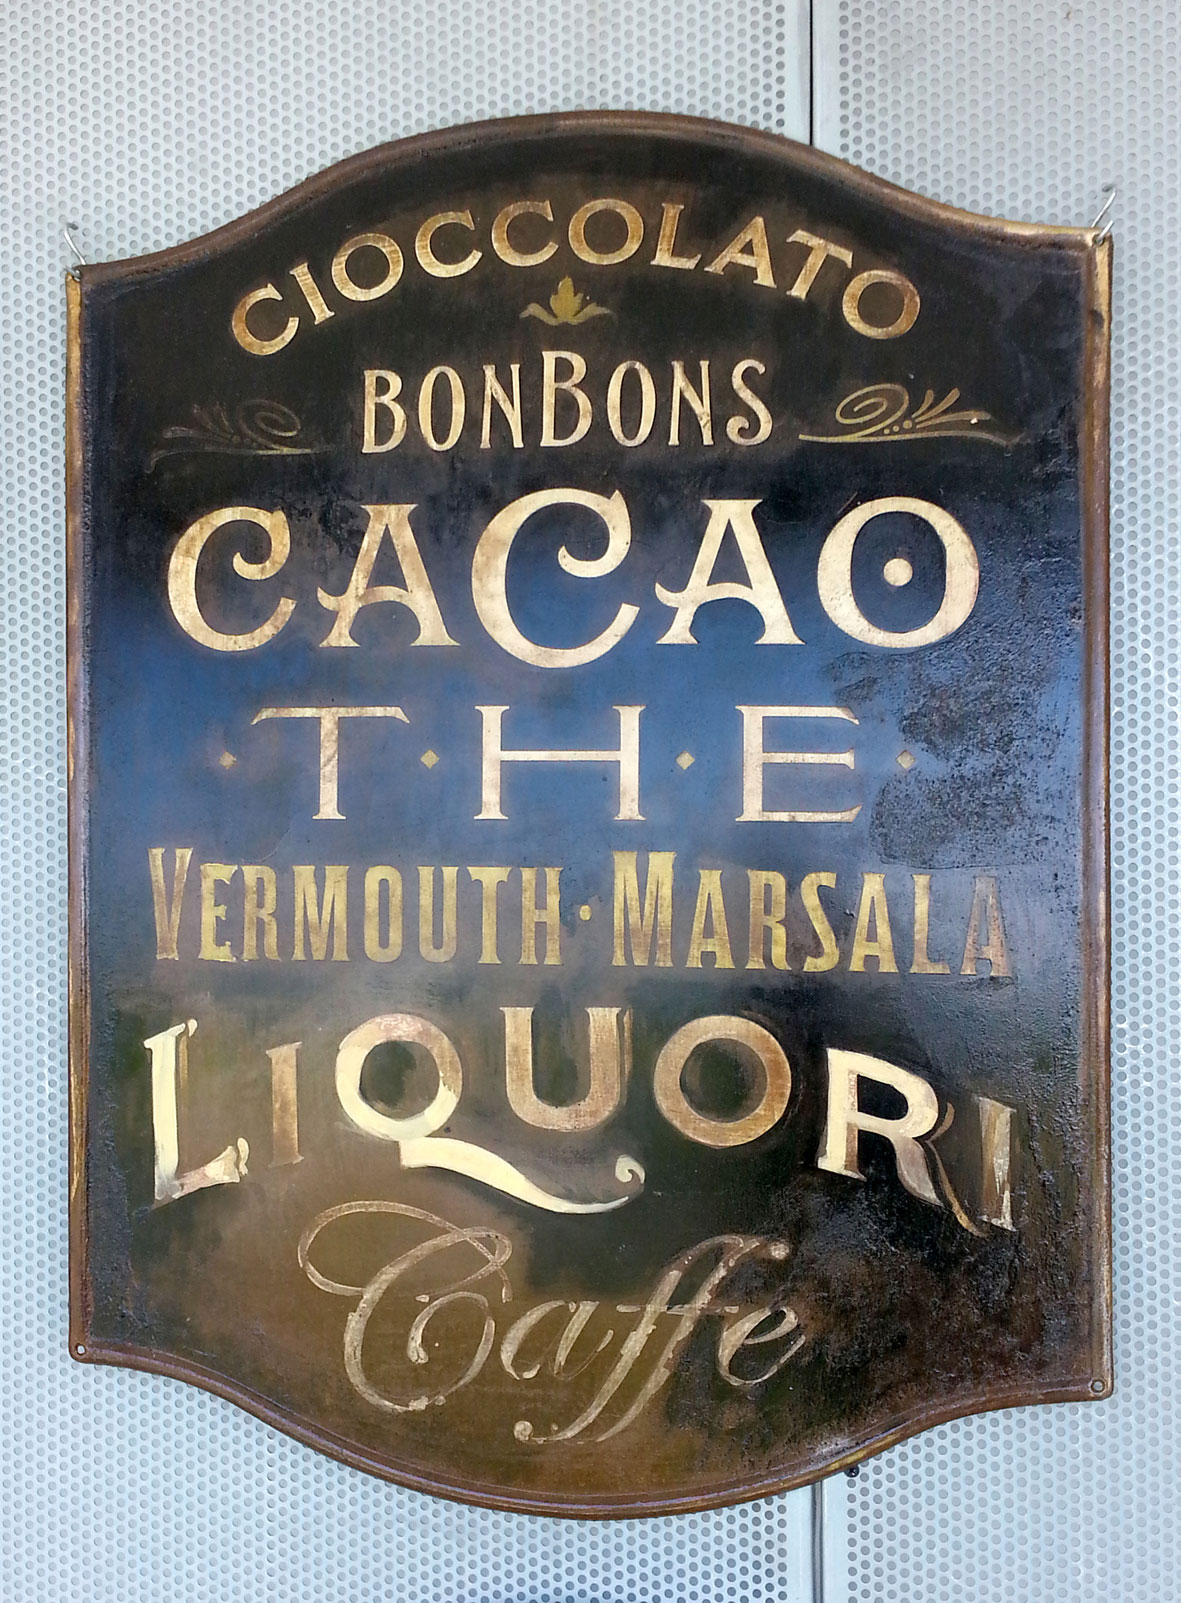 Cacao Bonbons Liquori